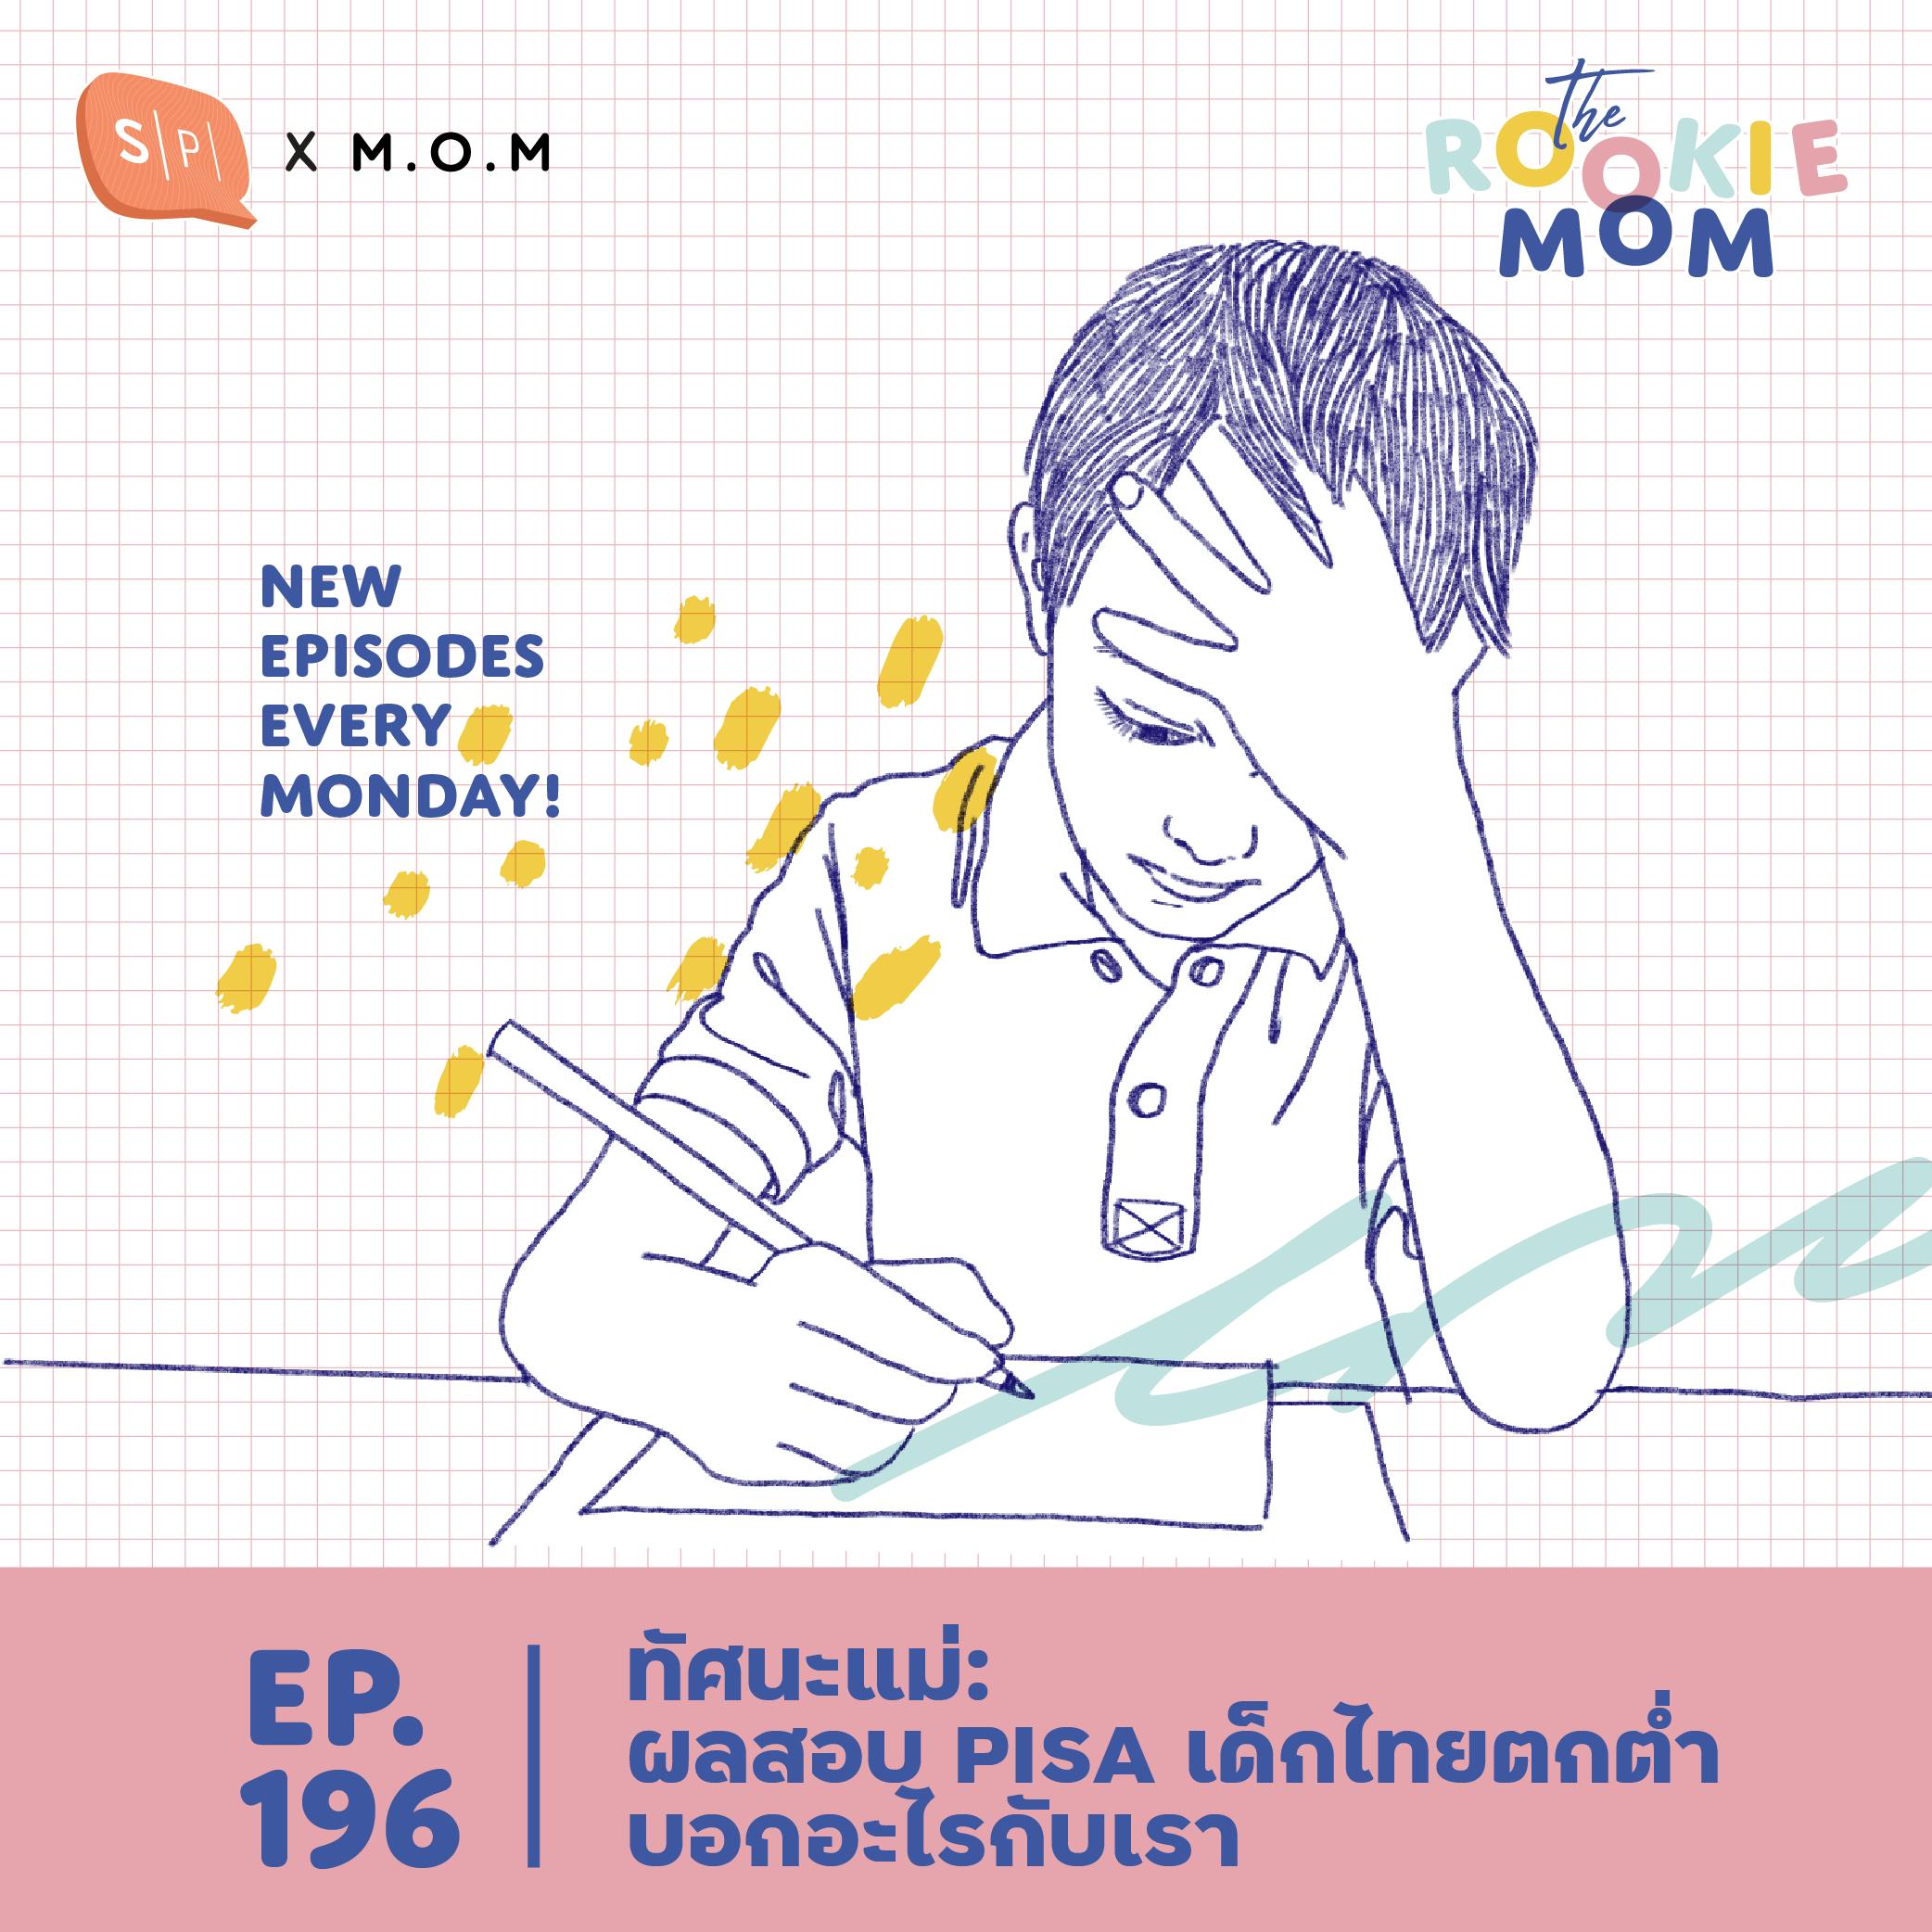 ทัศนะแม่: ผลสอบ PISA เด็กไทยตกต่ำ บอกอะไรกับเรา | The Rookie Mom EP196